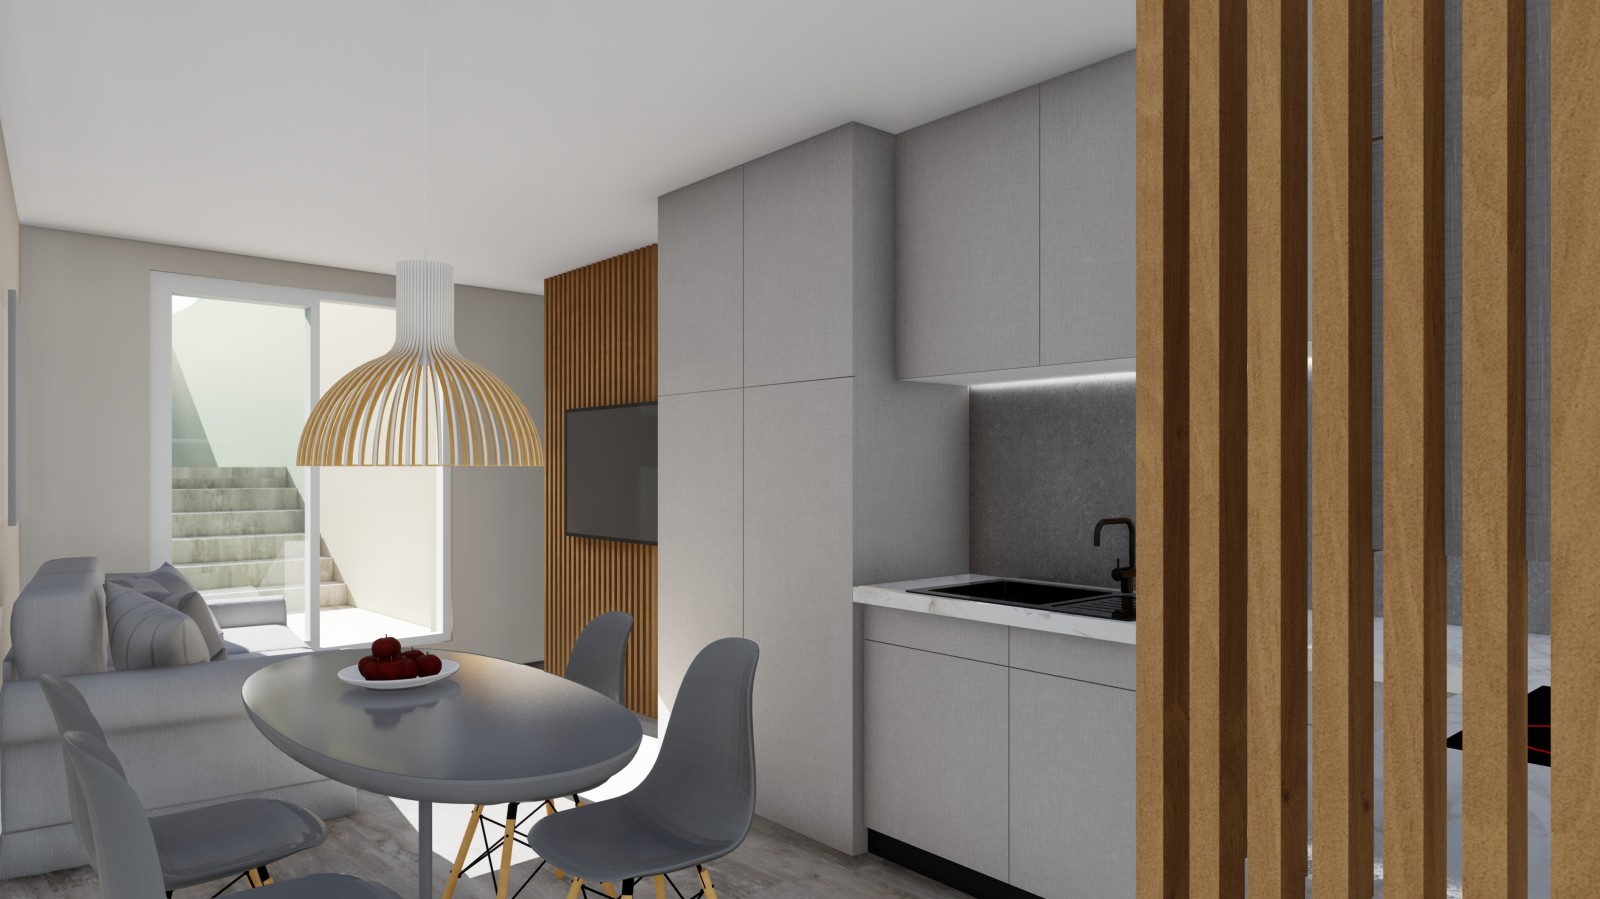 Apartamento T1 novo com varandas, para venda, no Porto_249160